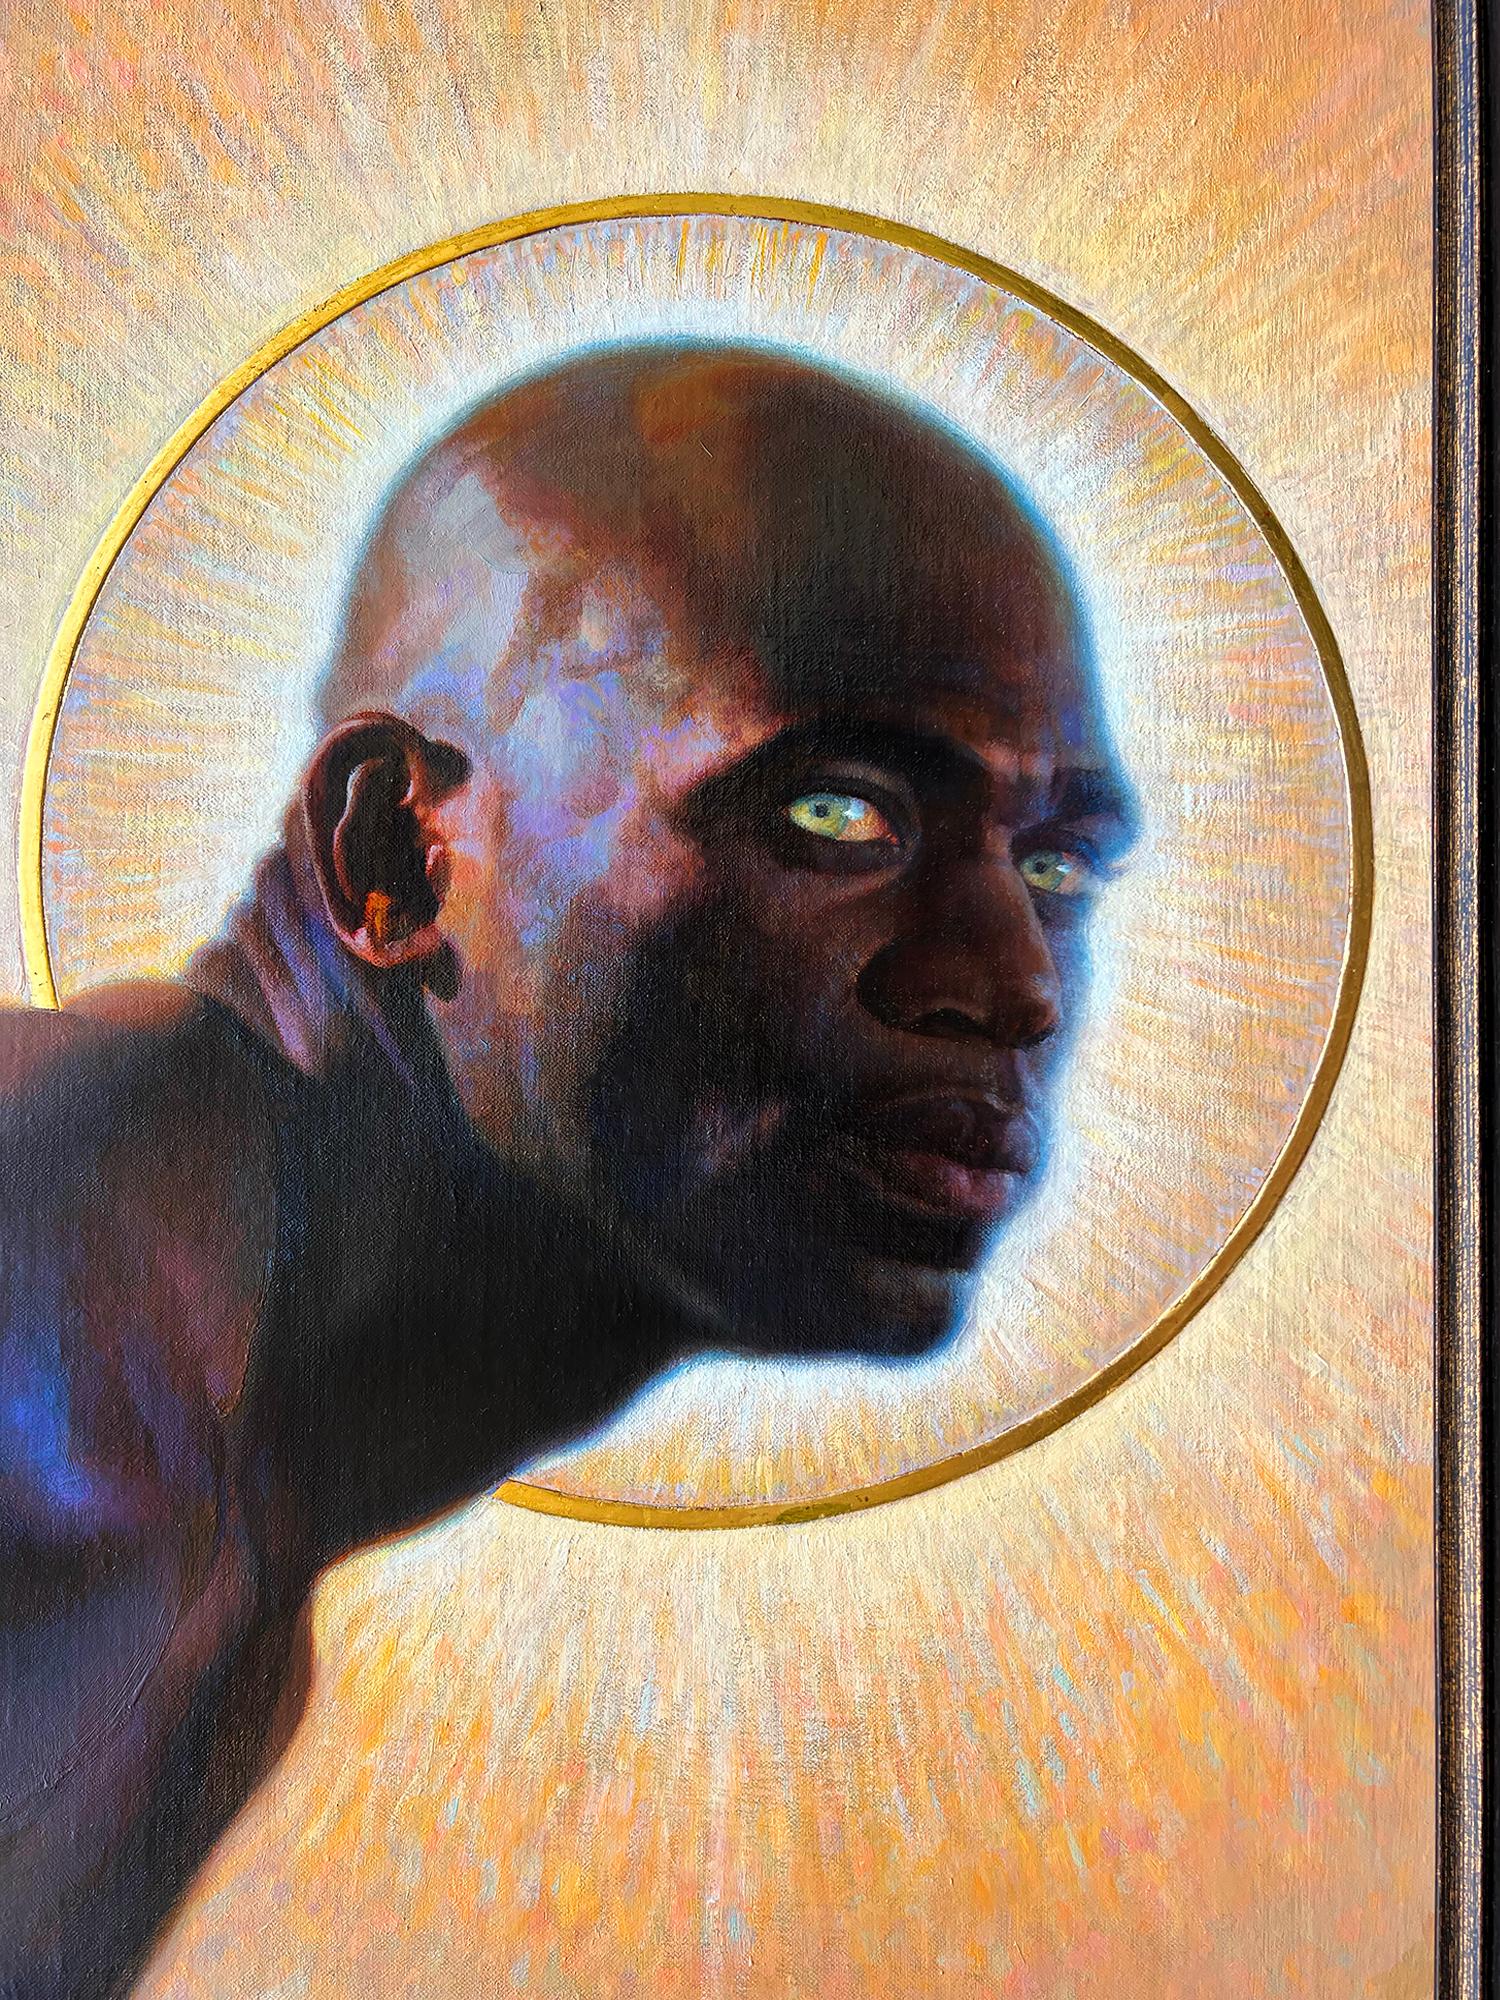 Black Angel - African American Artist - Black Artist - Painting by Thomas Blackshear